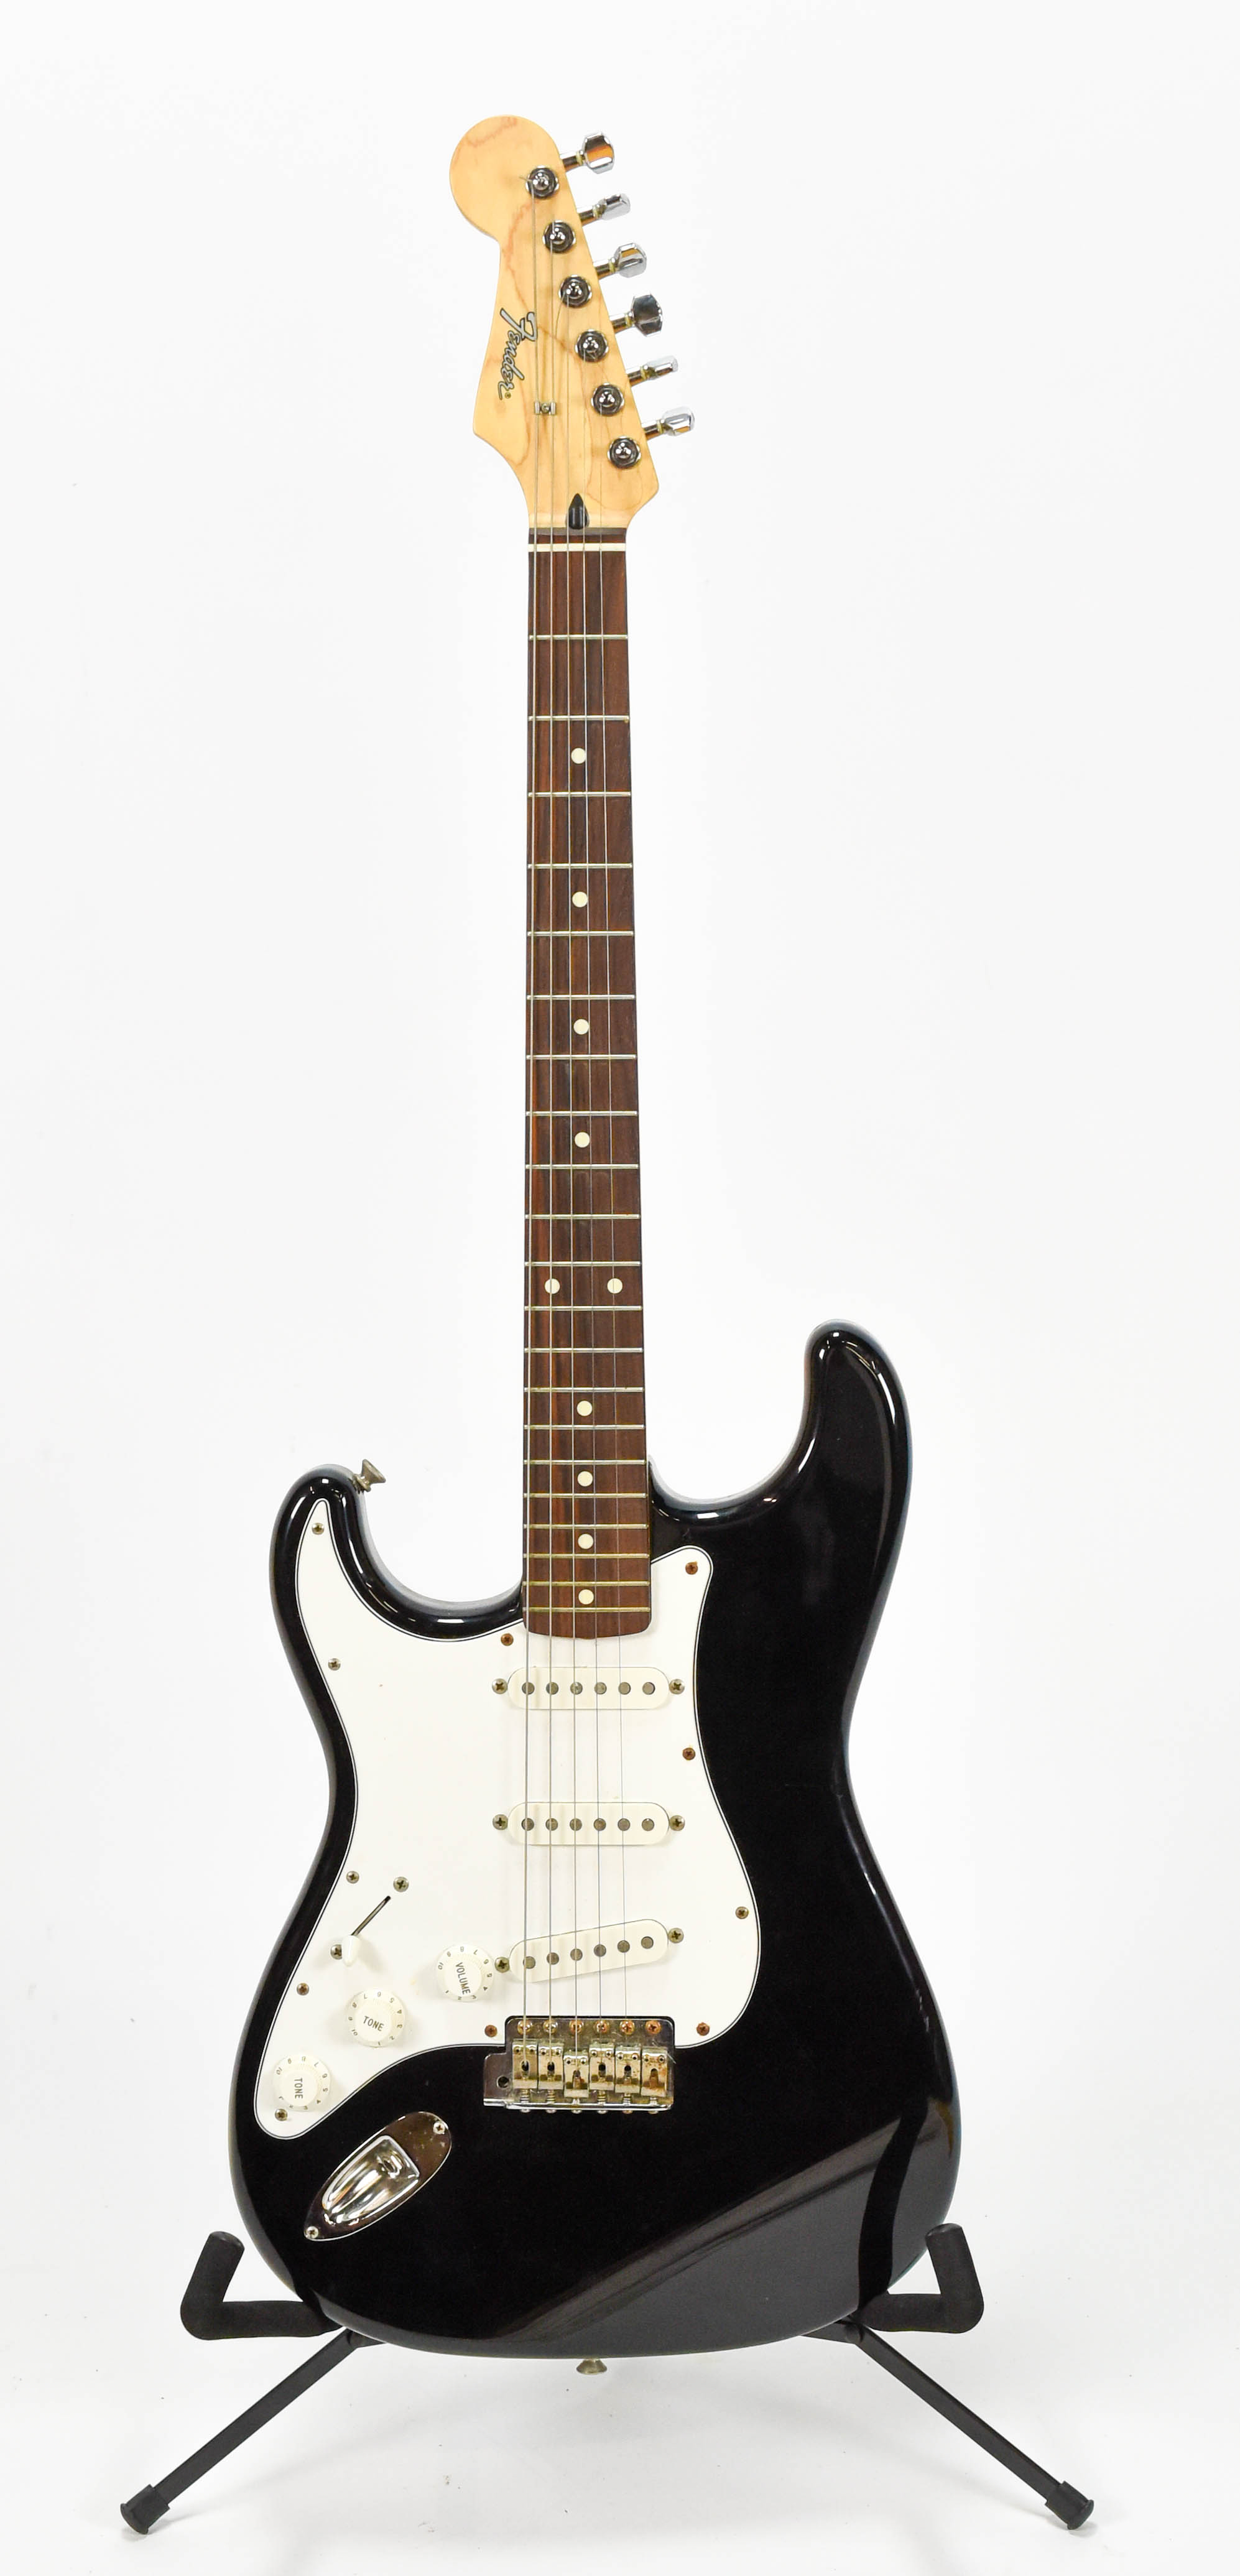 Black Fender Stratocaster Electric Guitar